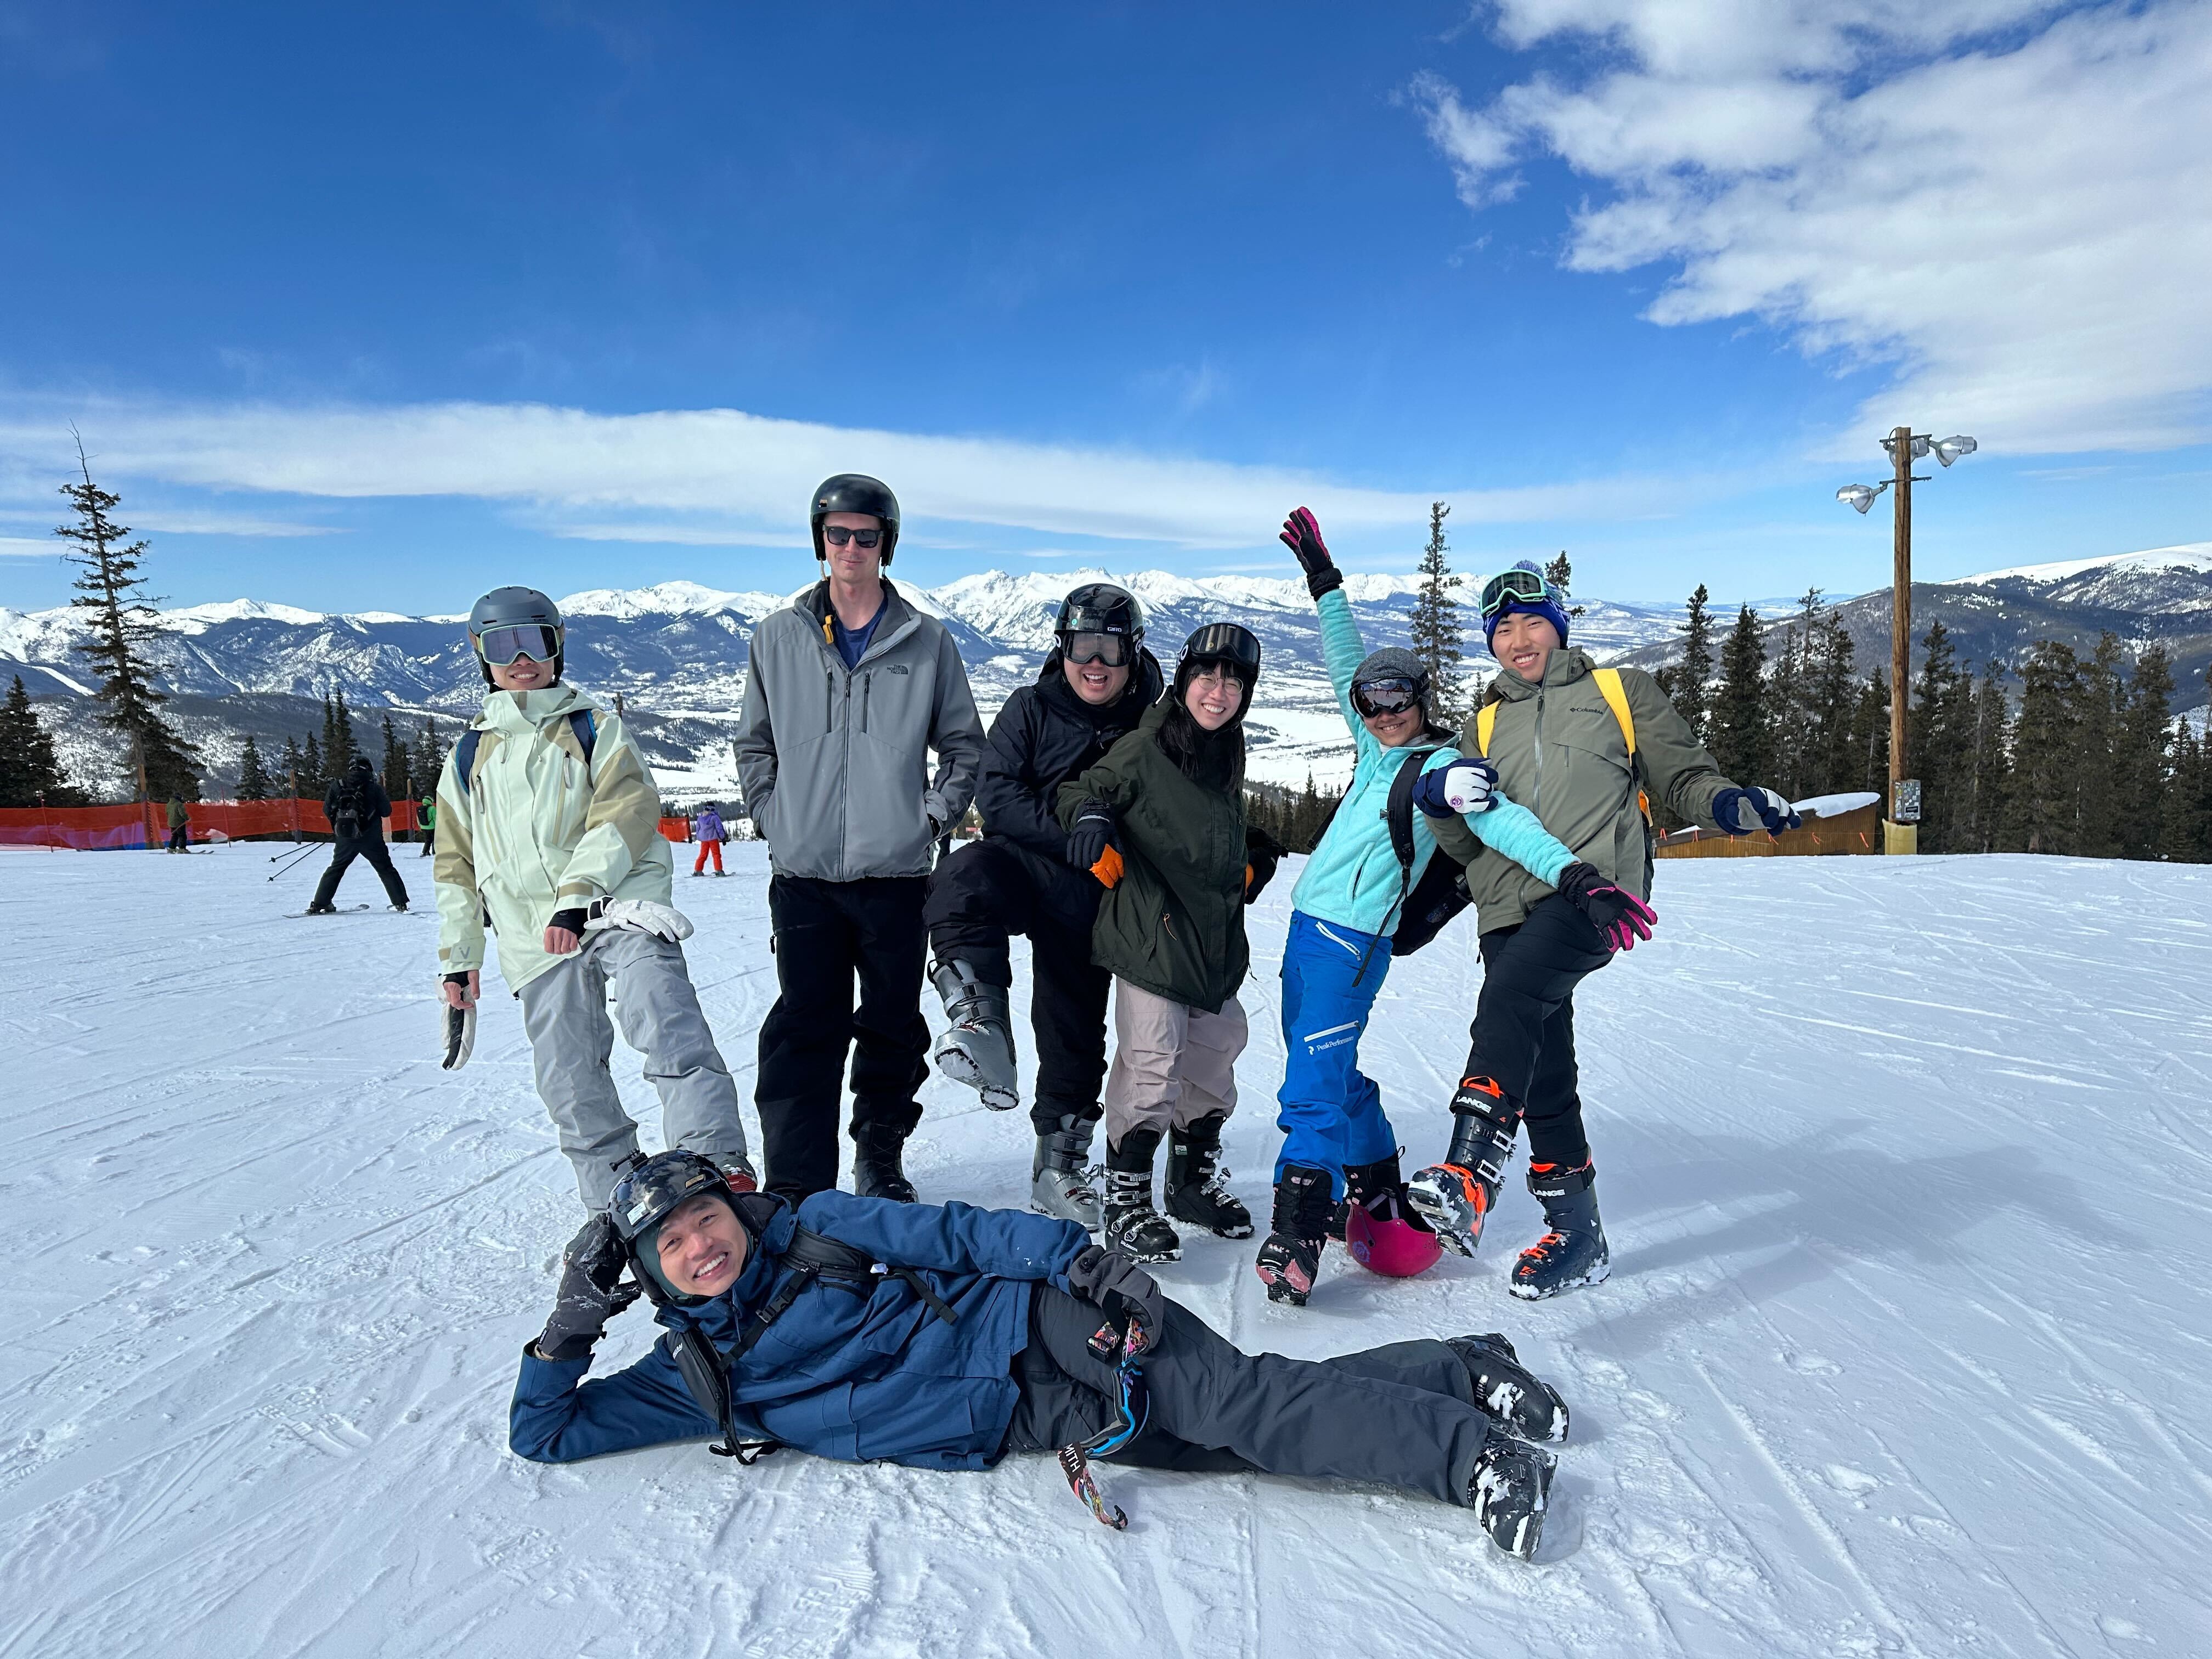 Group ski